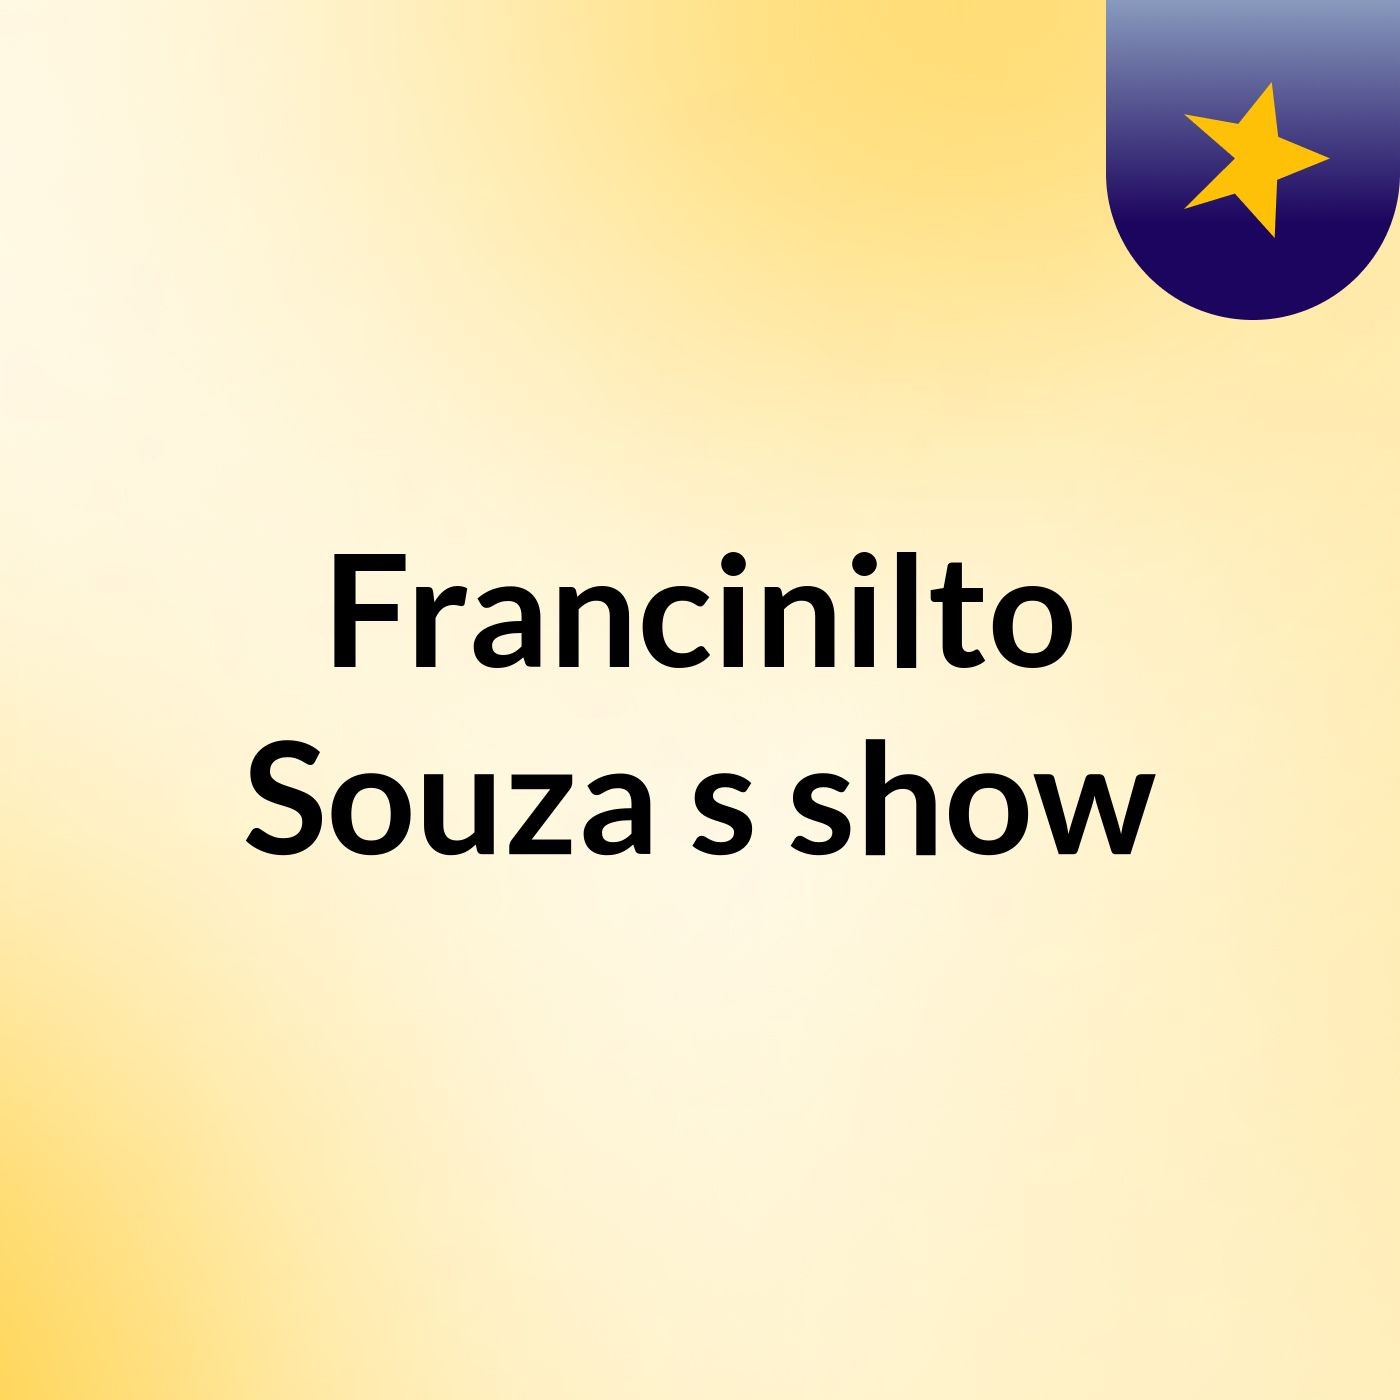 Francinilto Souza's show